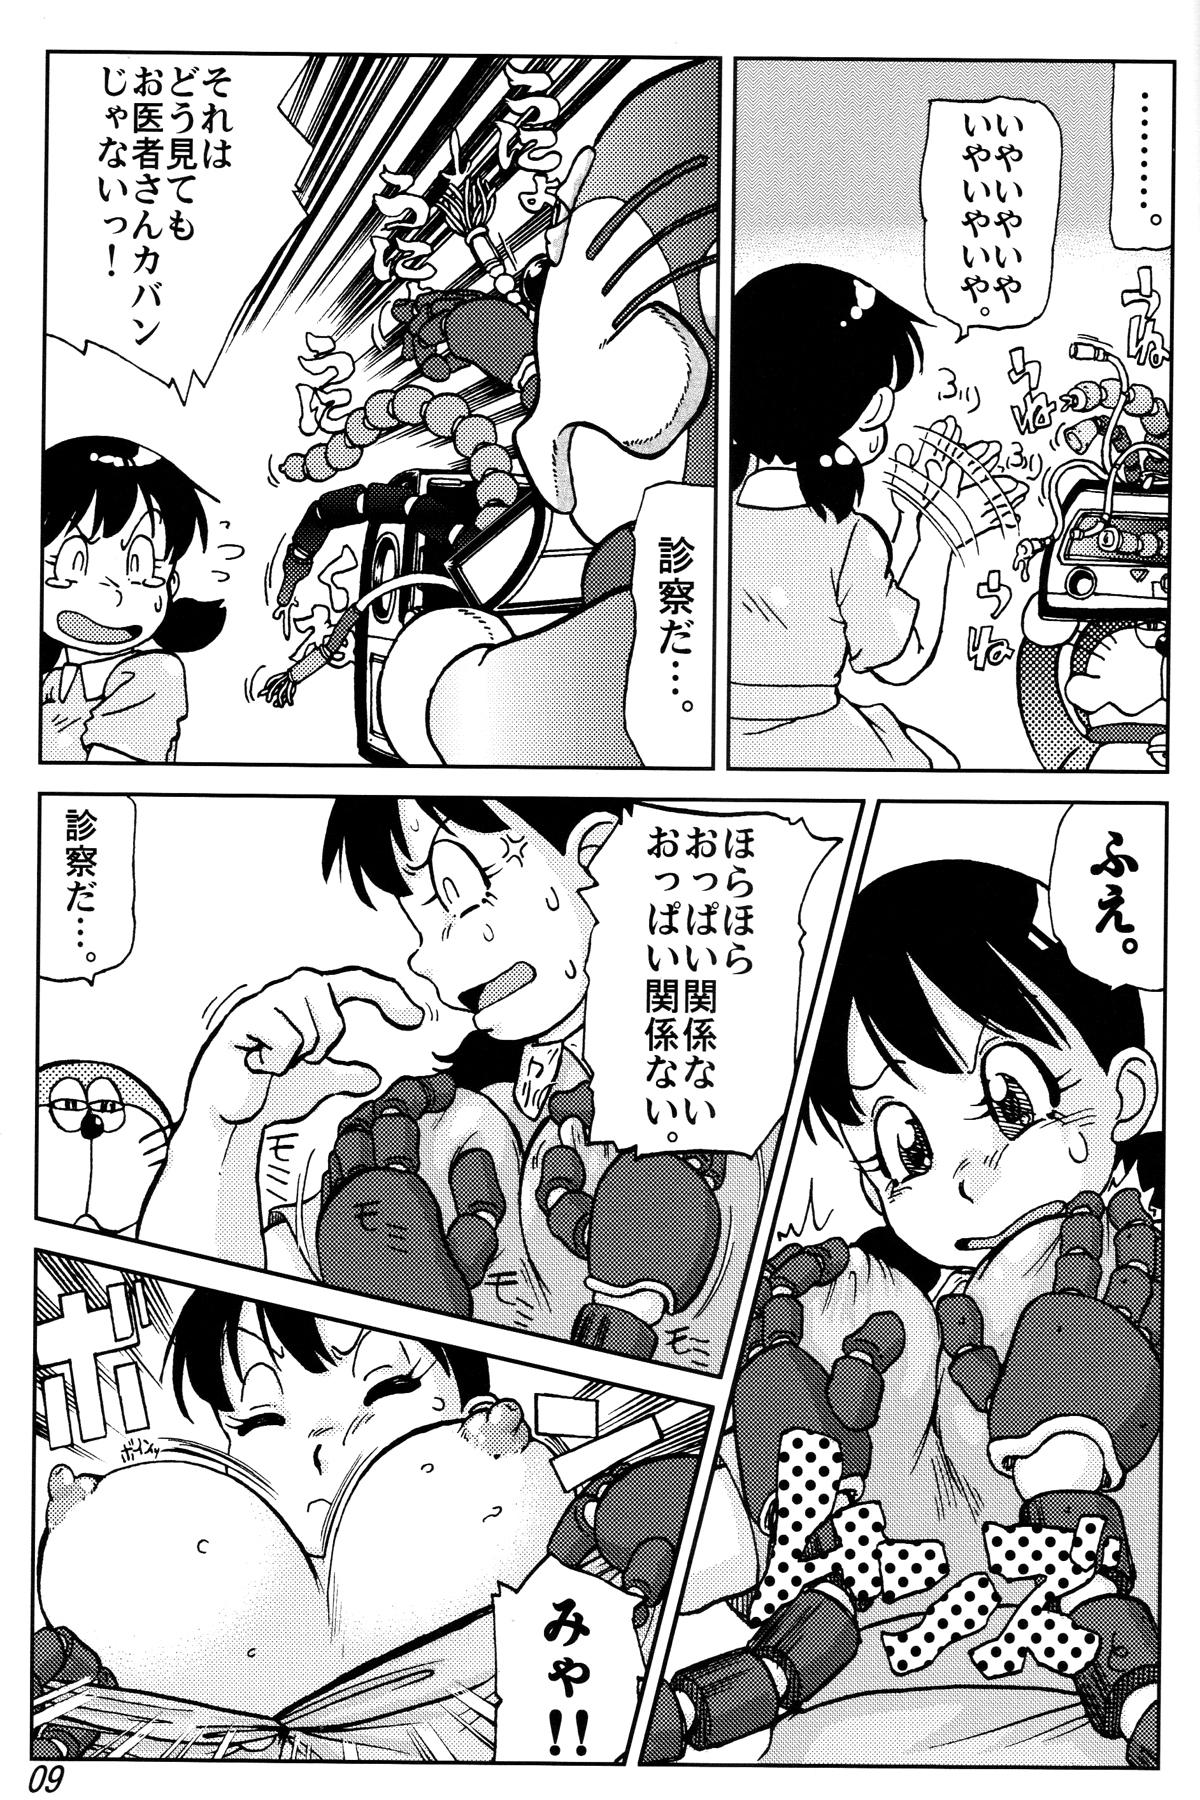 Best Blowjob Ever Shizuka & Kurikuri Guardian - Doraemon Kiteretsu daihyakka Coroa - Page 9